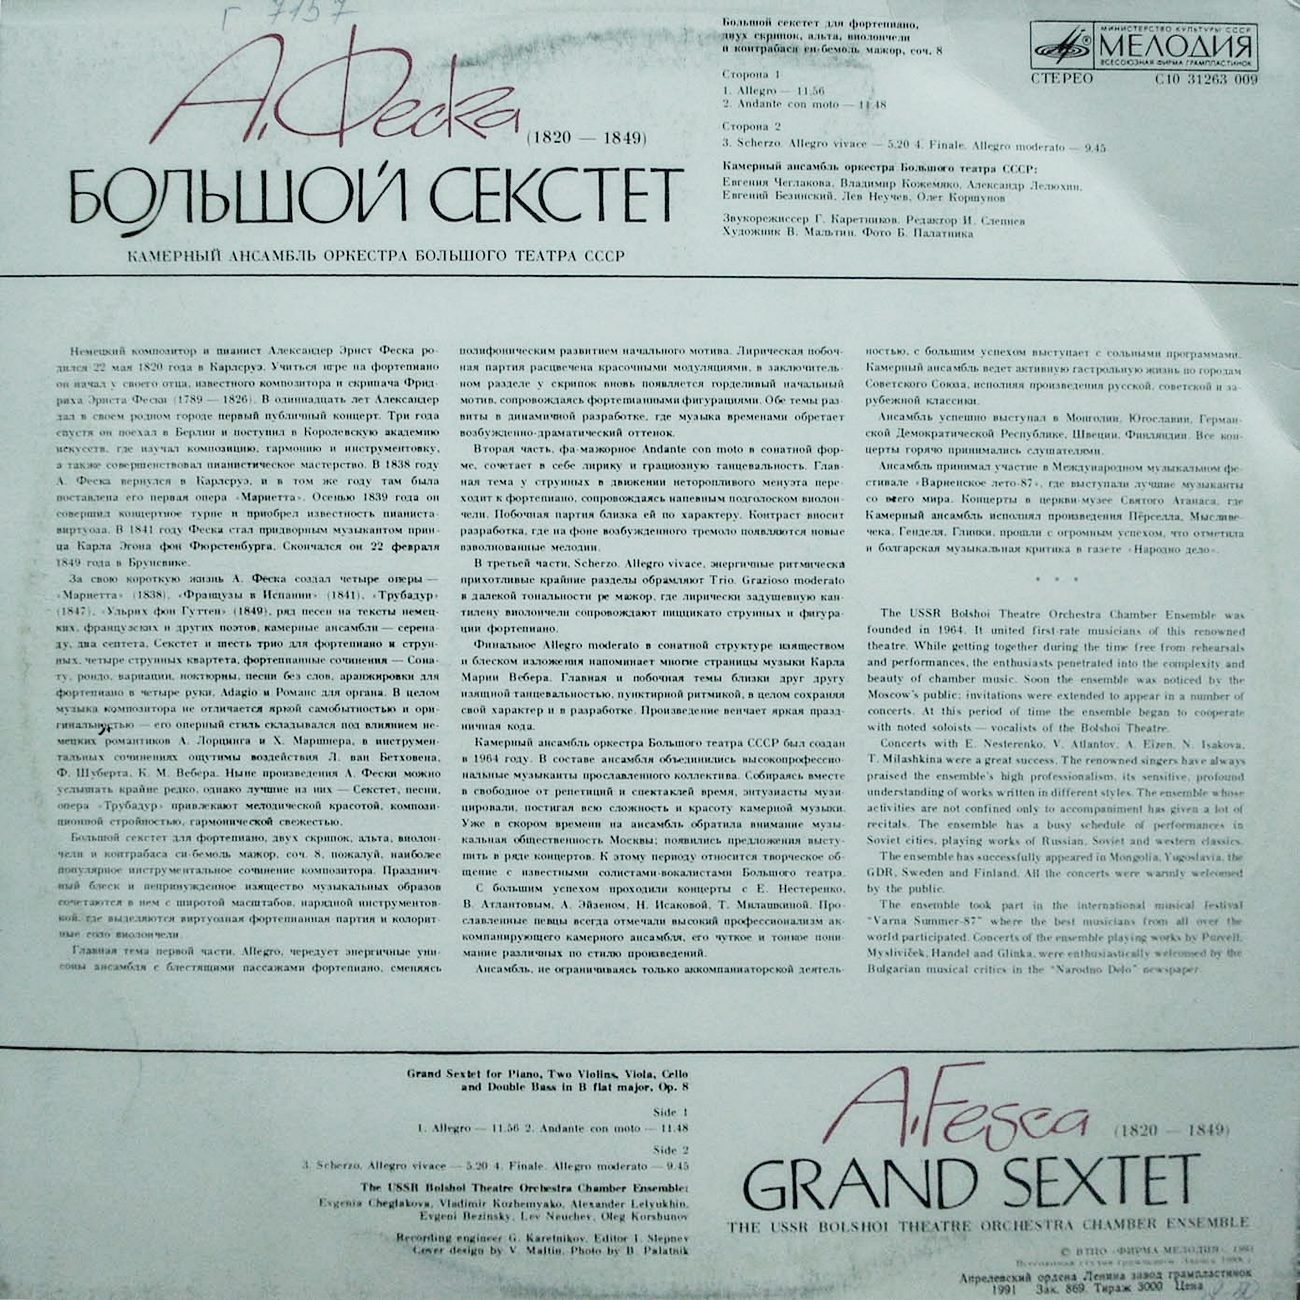 А. ФЕСКА (1820–1849): Большой секстет си-бемоль мажор, соч. 8